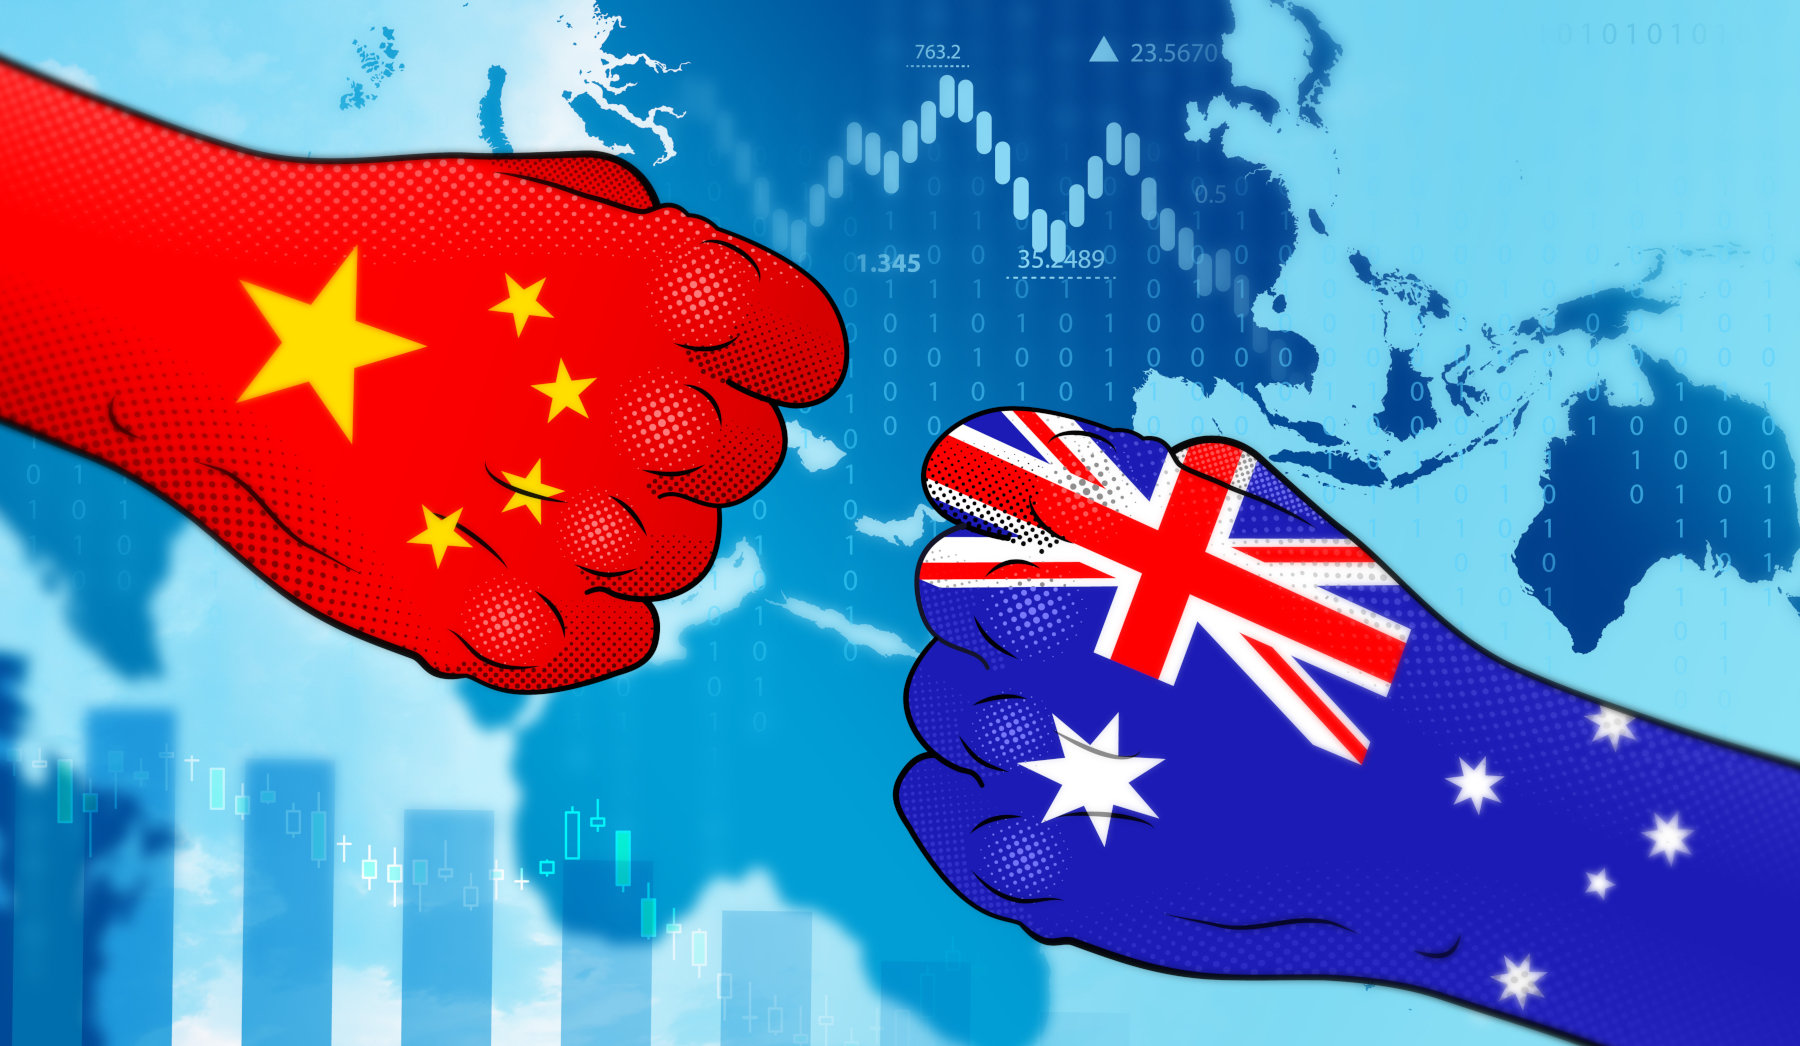 Μετά το Ρωσία-Ουκρανία, έχουμε το Αυστραλία-Κίνα: Το κινέζικο laser που στόχευσε αυστραλιανό jet